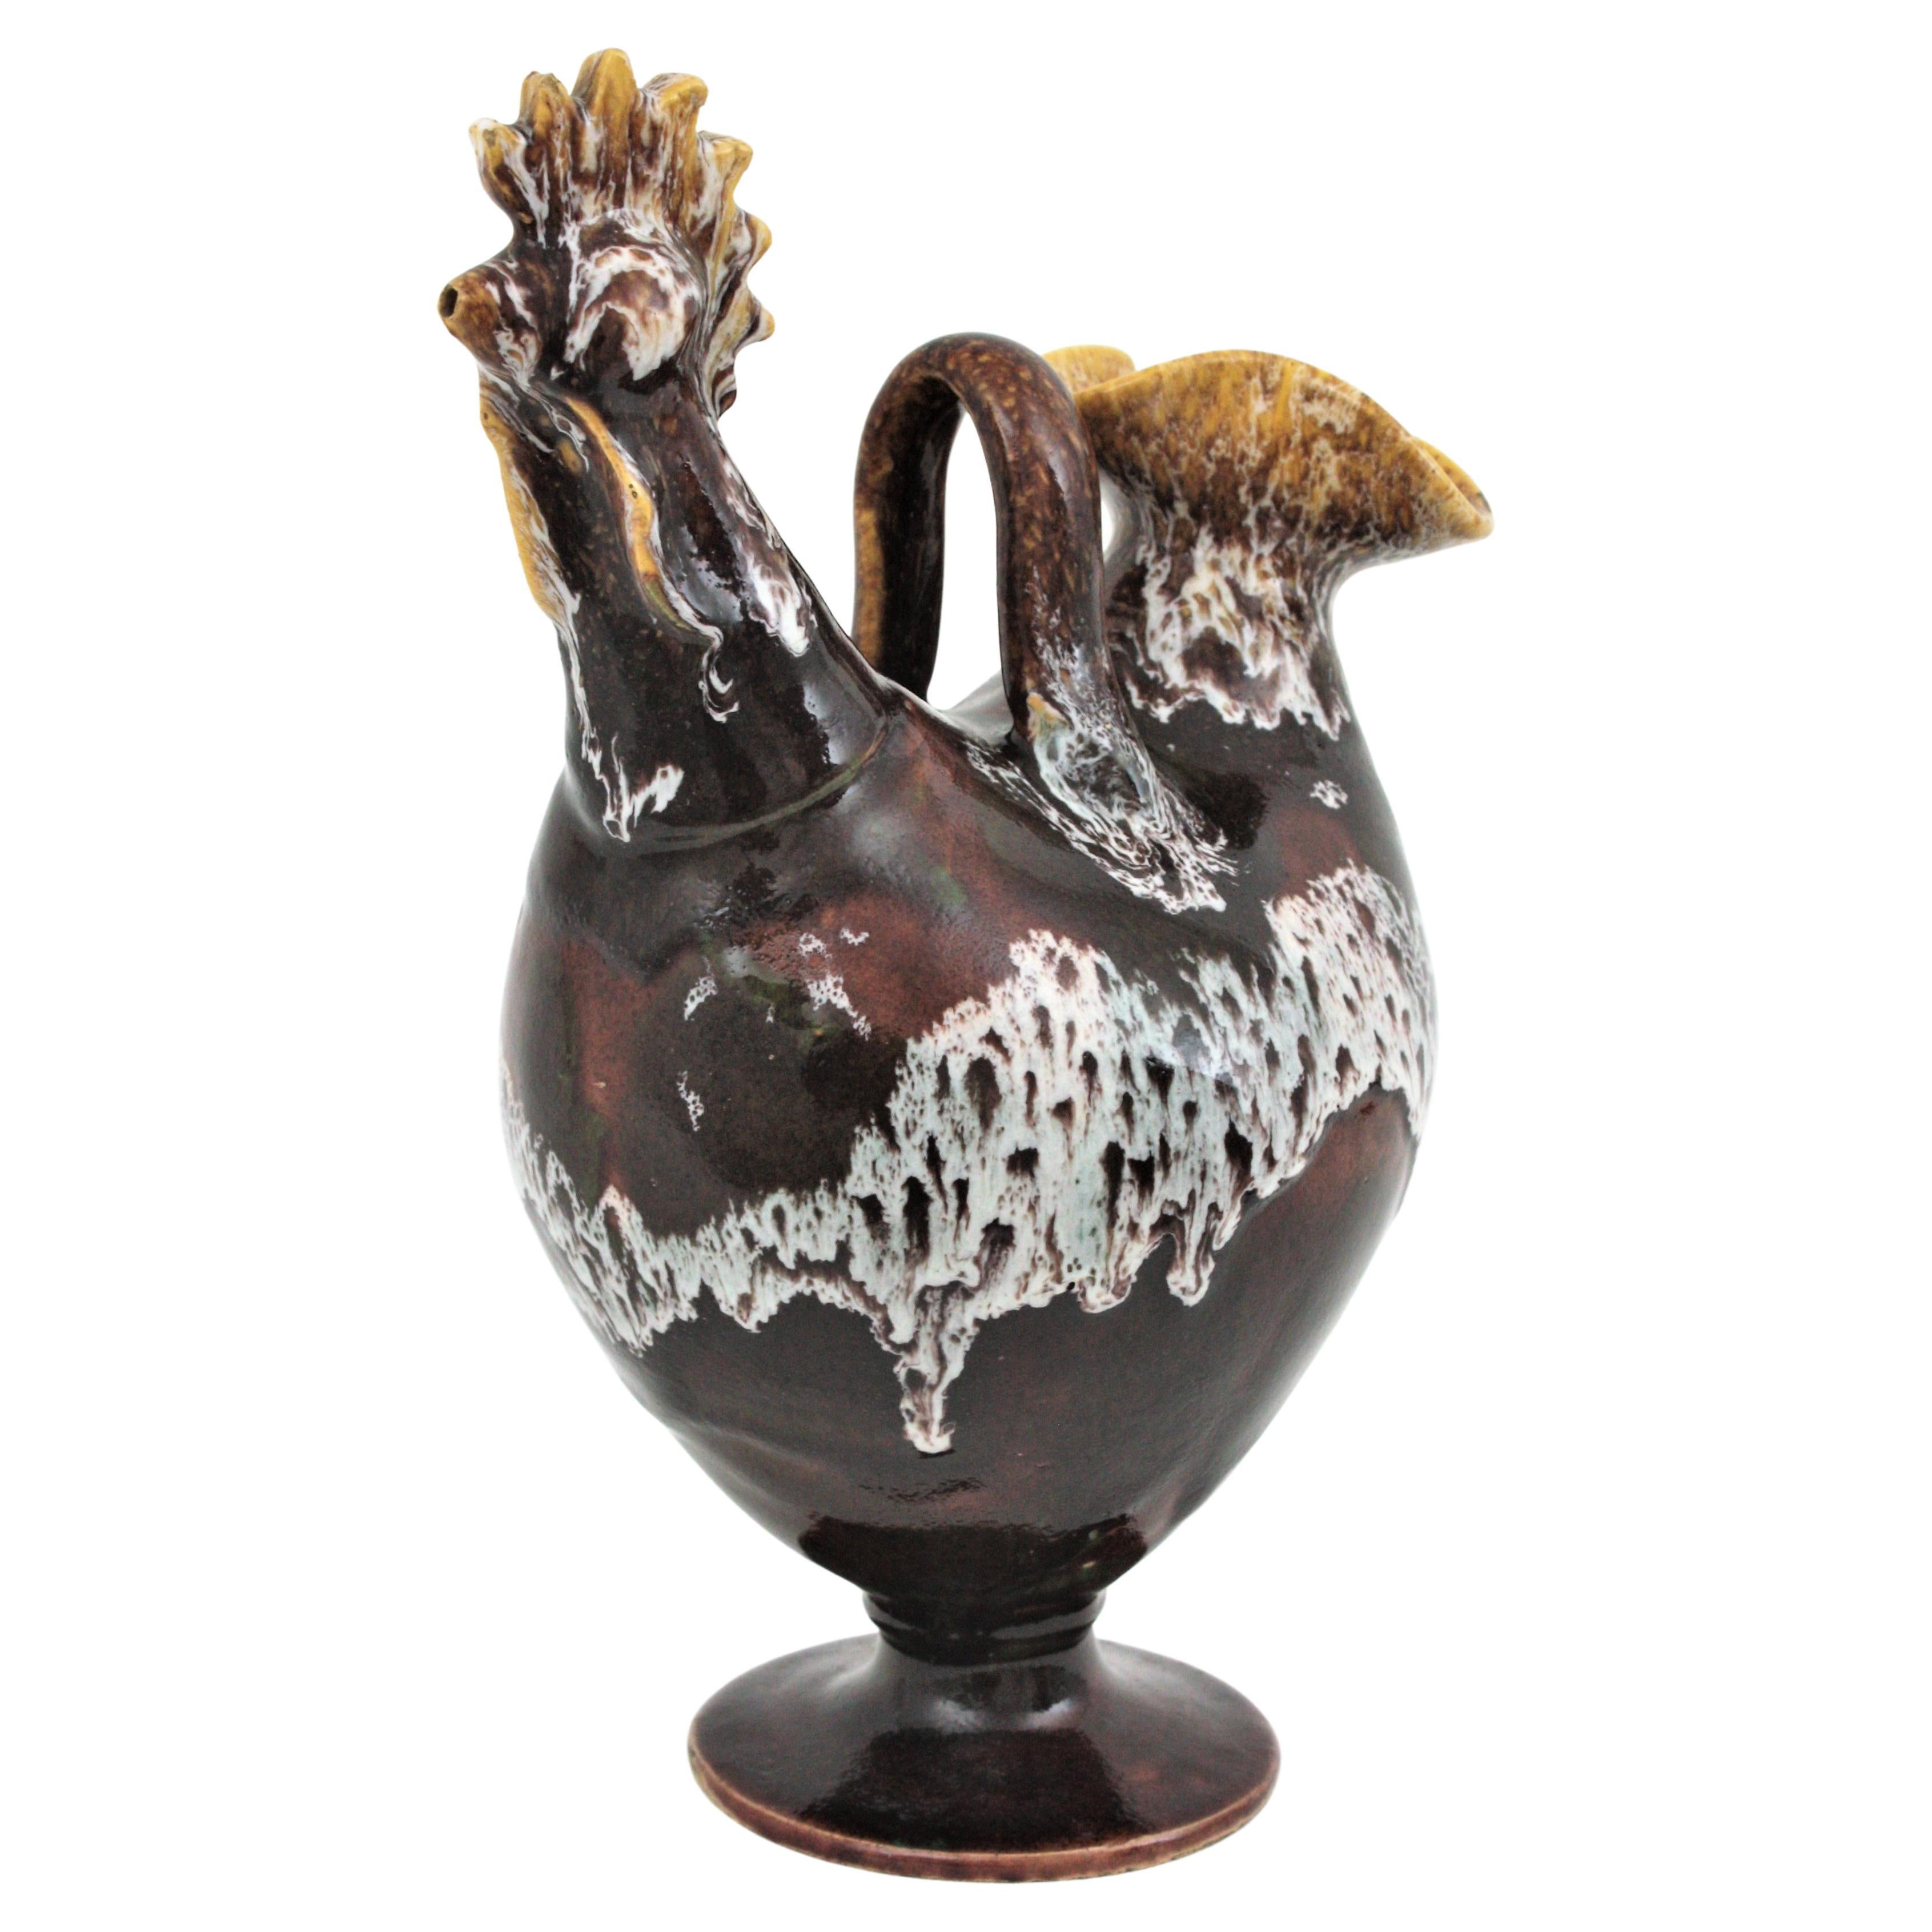 Spanischer Krug in Form eines Hahns aus braun glasierter Keramik, 1960er Jahre